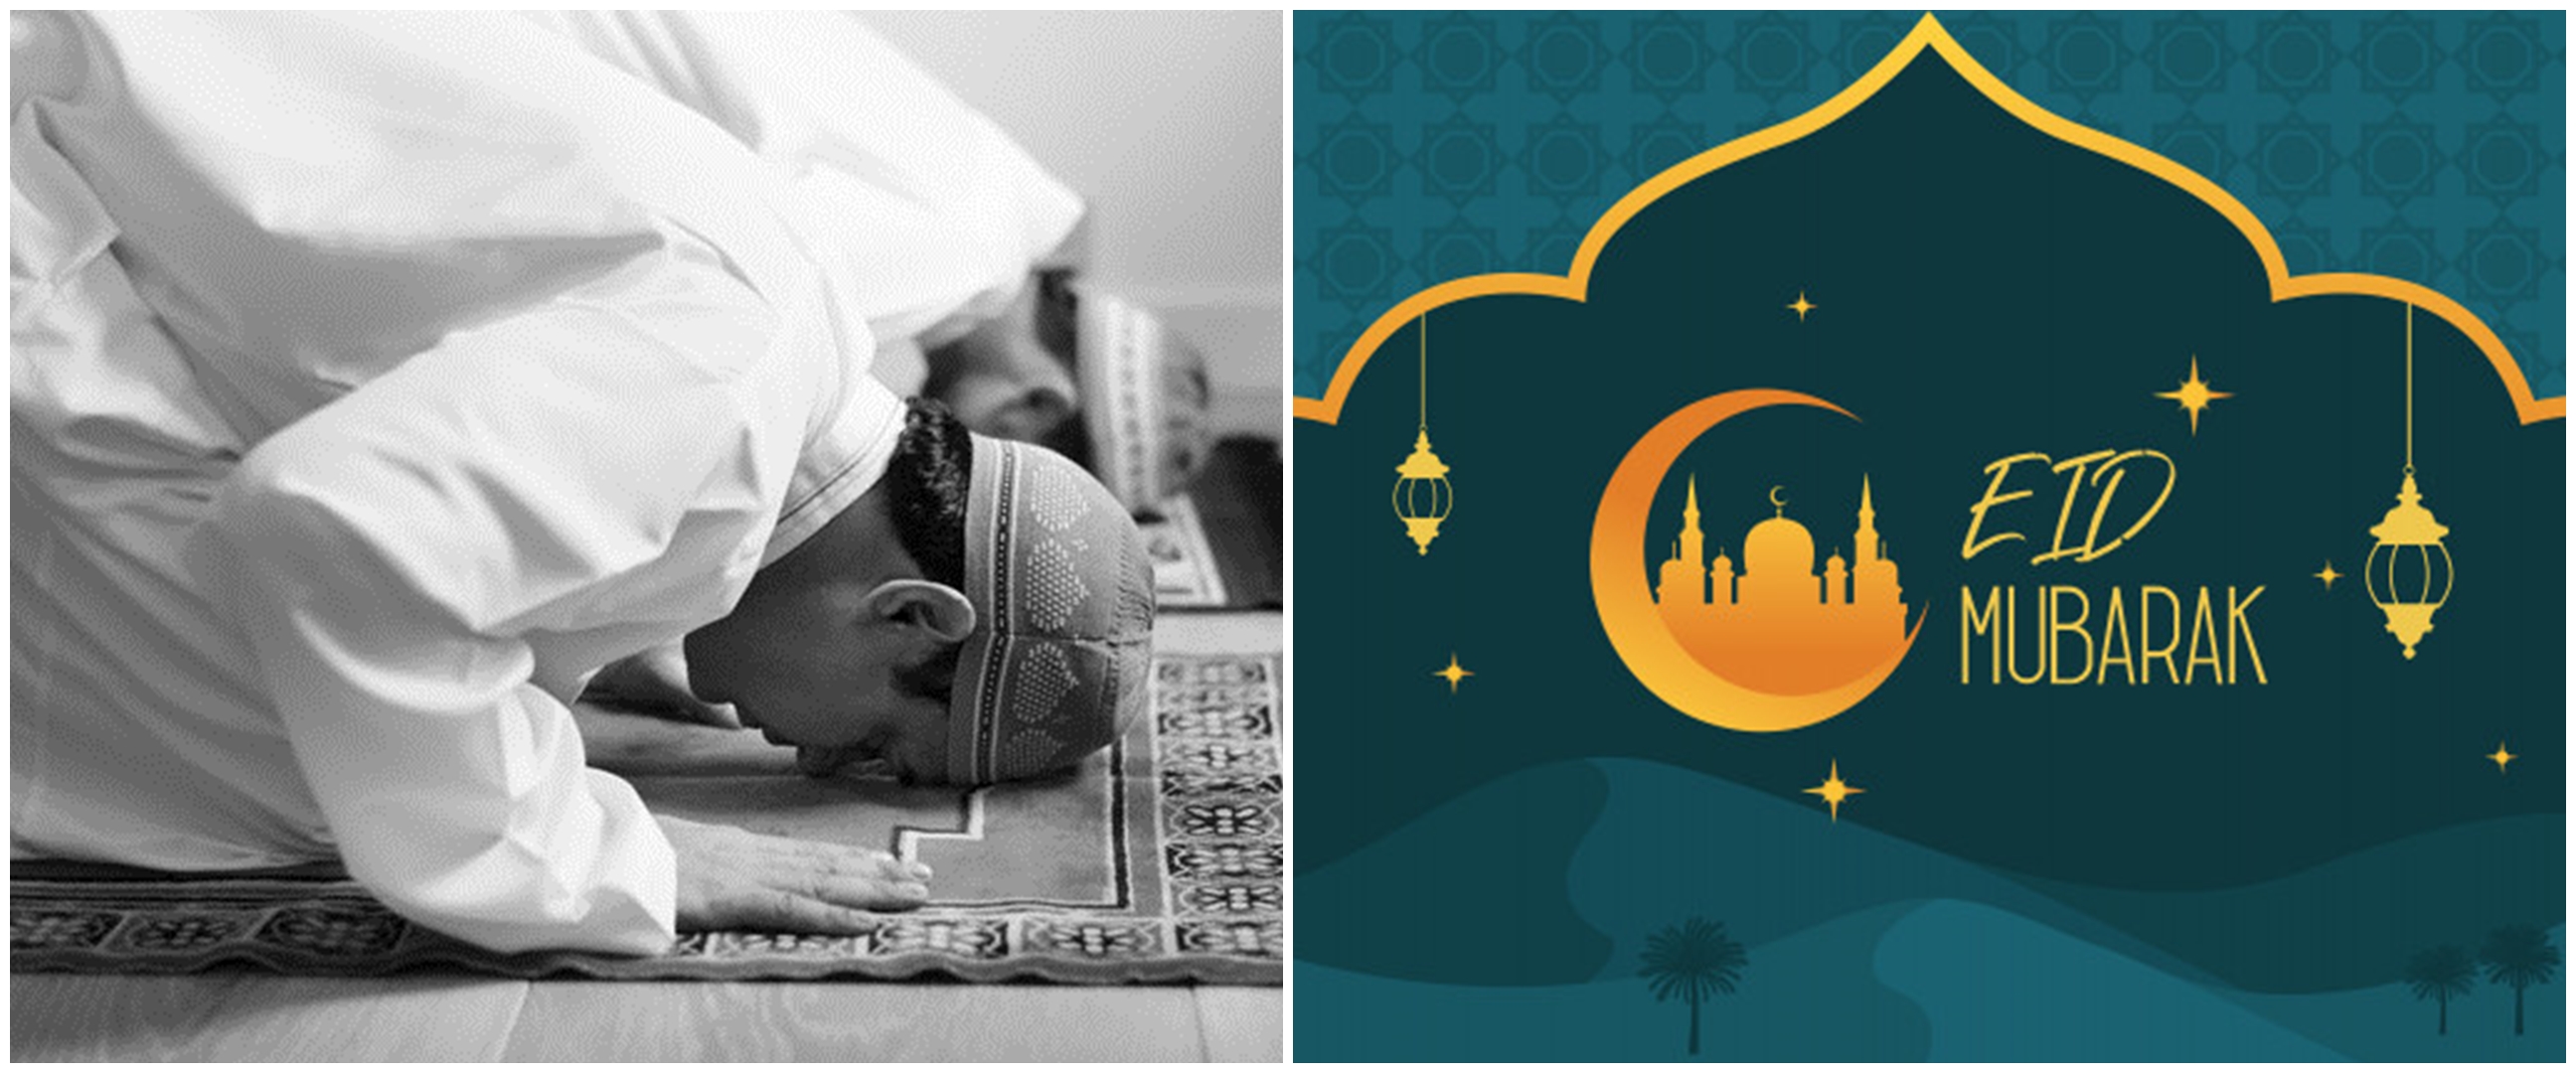 Tata cara sholat Idul Fitri beserta doa dan tuntunan sunahnya